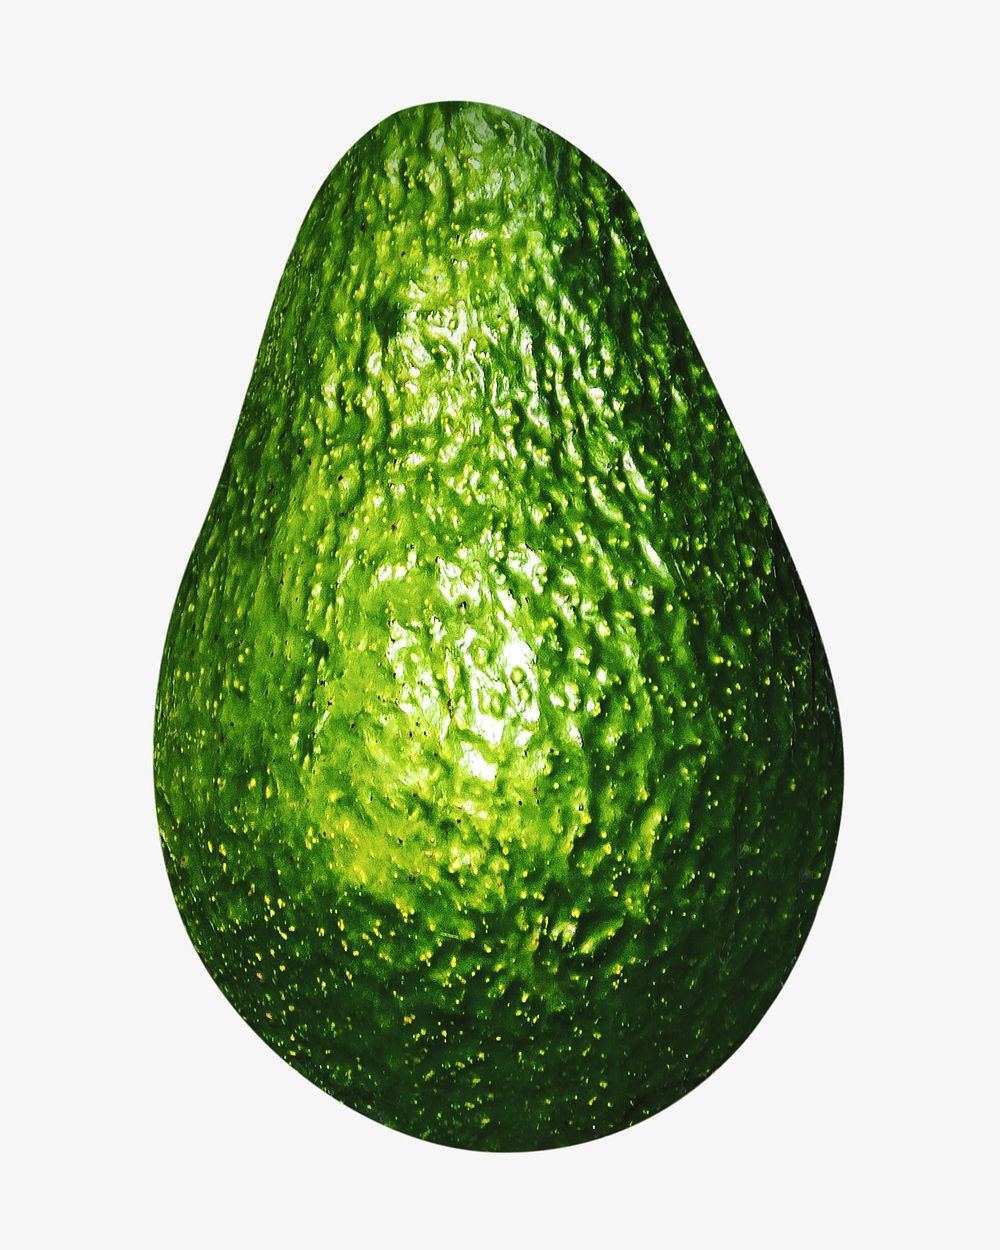 Avocado image on white